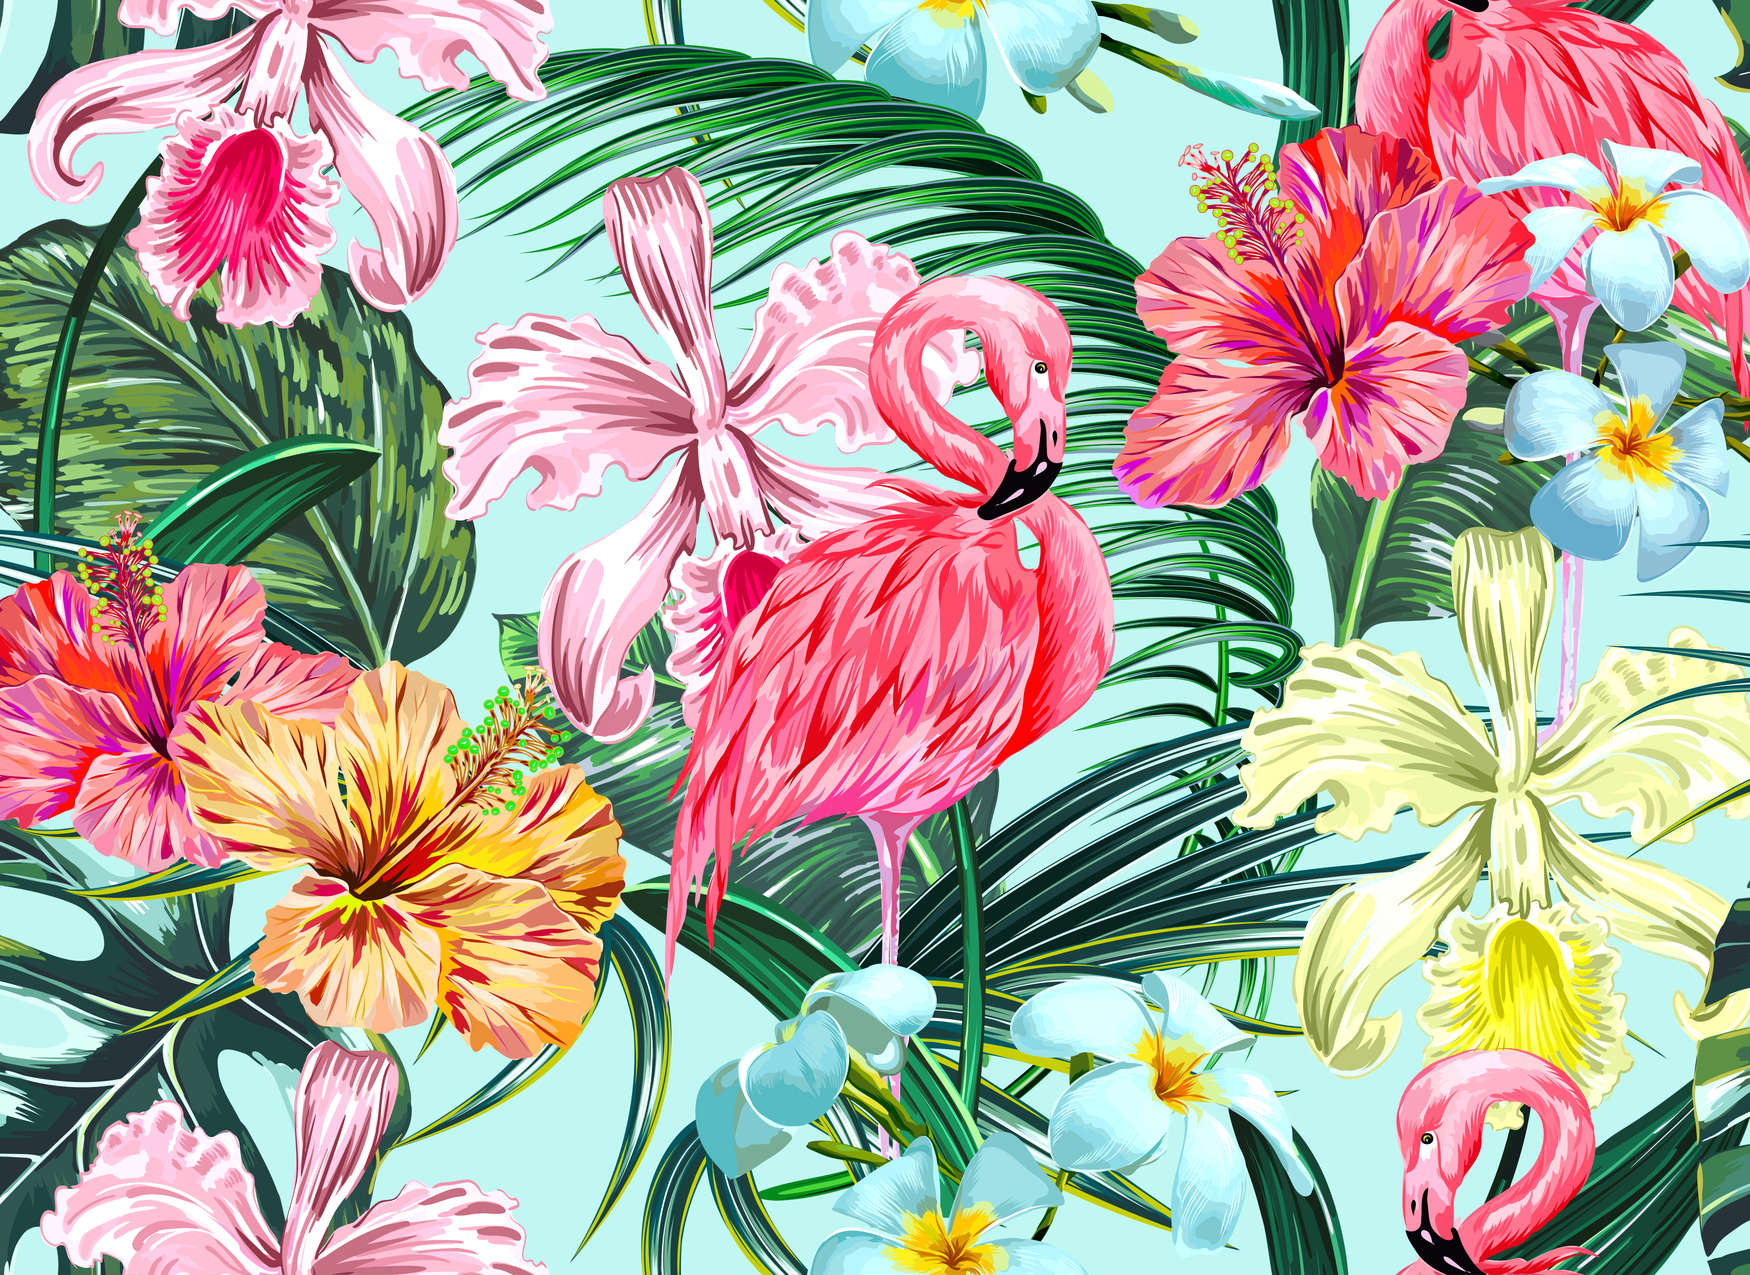             Tropische Fototapete mit Flamingo – Bunt, Blau, Grün
        